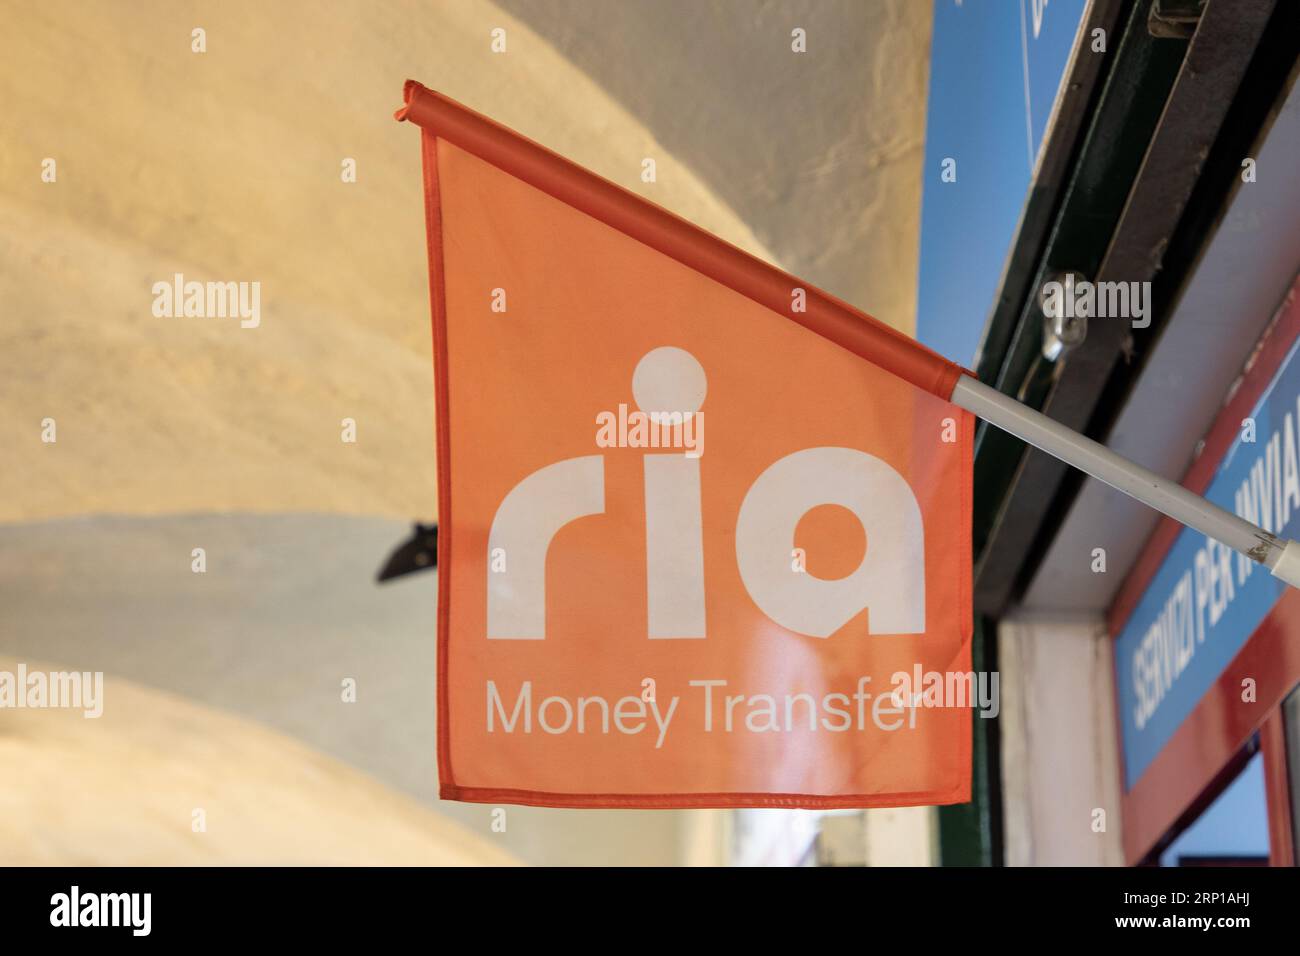 Milan , Italie - 08 17 2023 : ria transfert d'argent texte marque et signe logo façade mur drapeau orange agence transfert d'argent service à transférer Banque D'Images